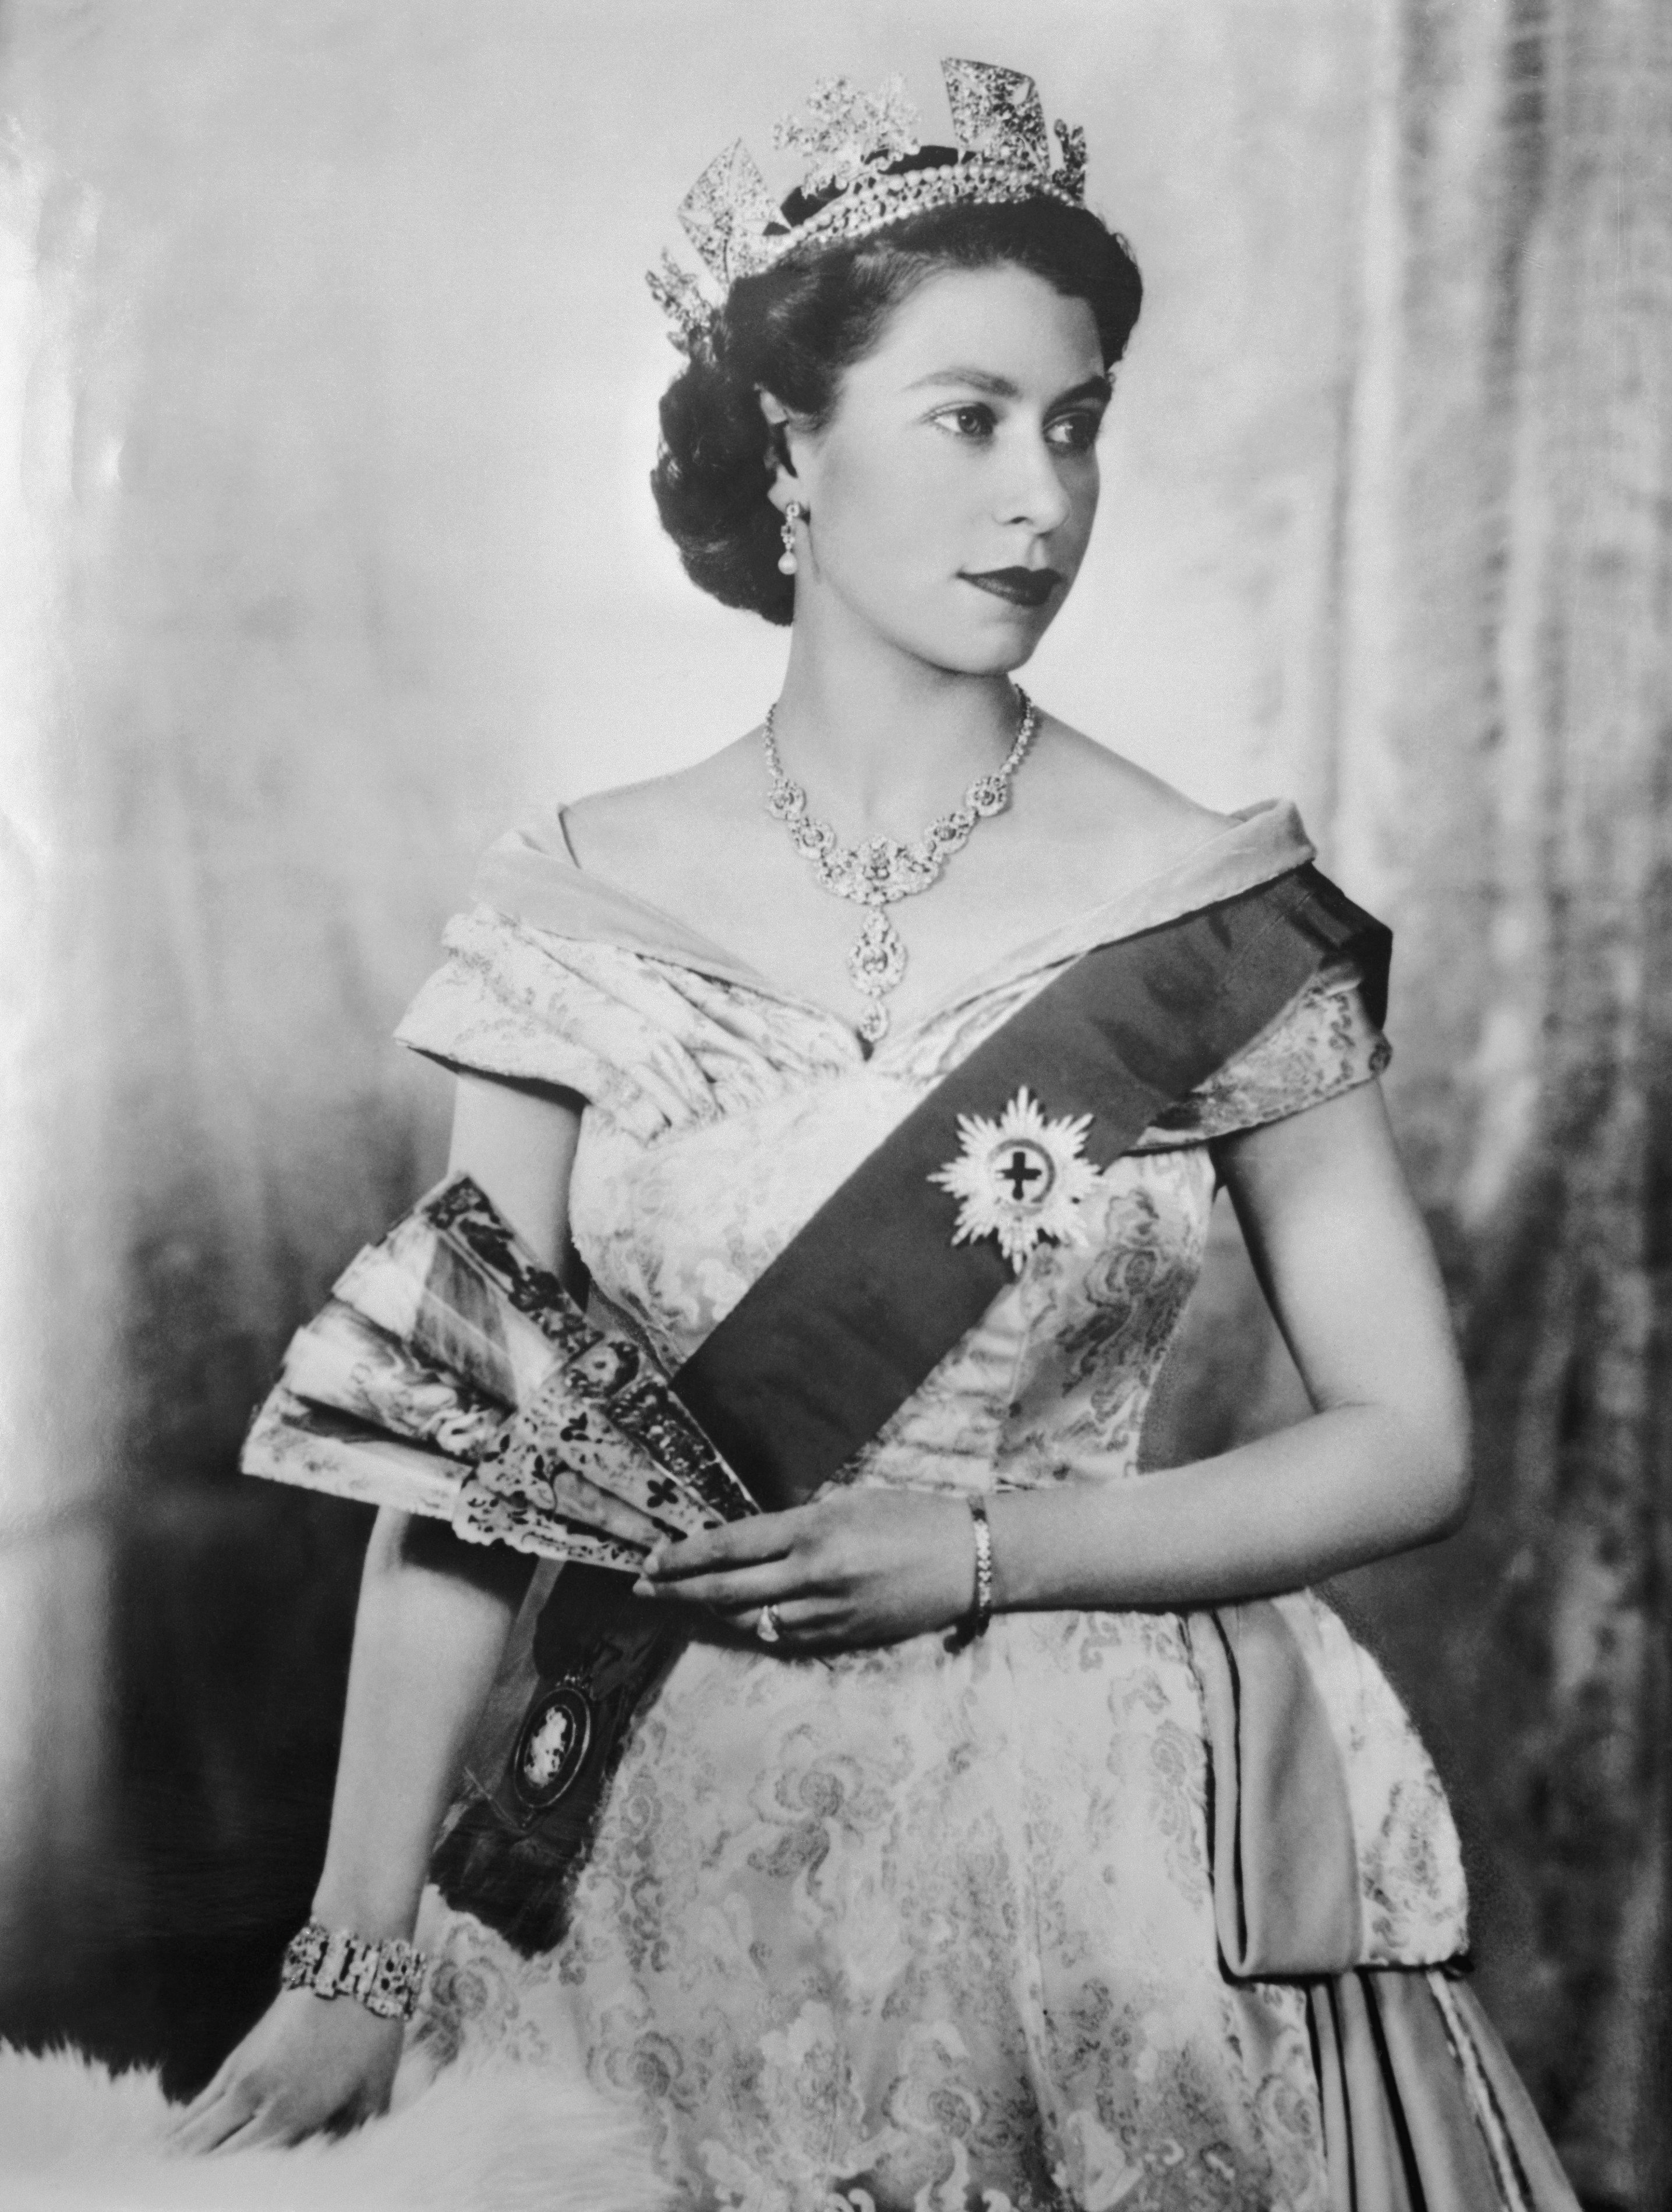 Porträt von Königin Elizabeth II. von England mit Tiara und Band des Hosenbandordens. 15. April 1952 | Quelle: Getty Images